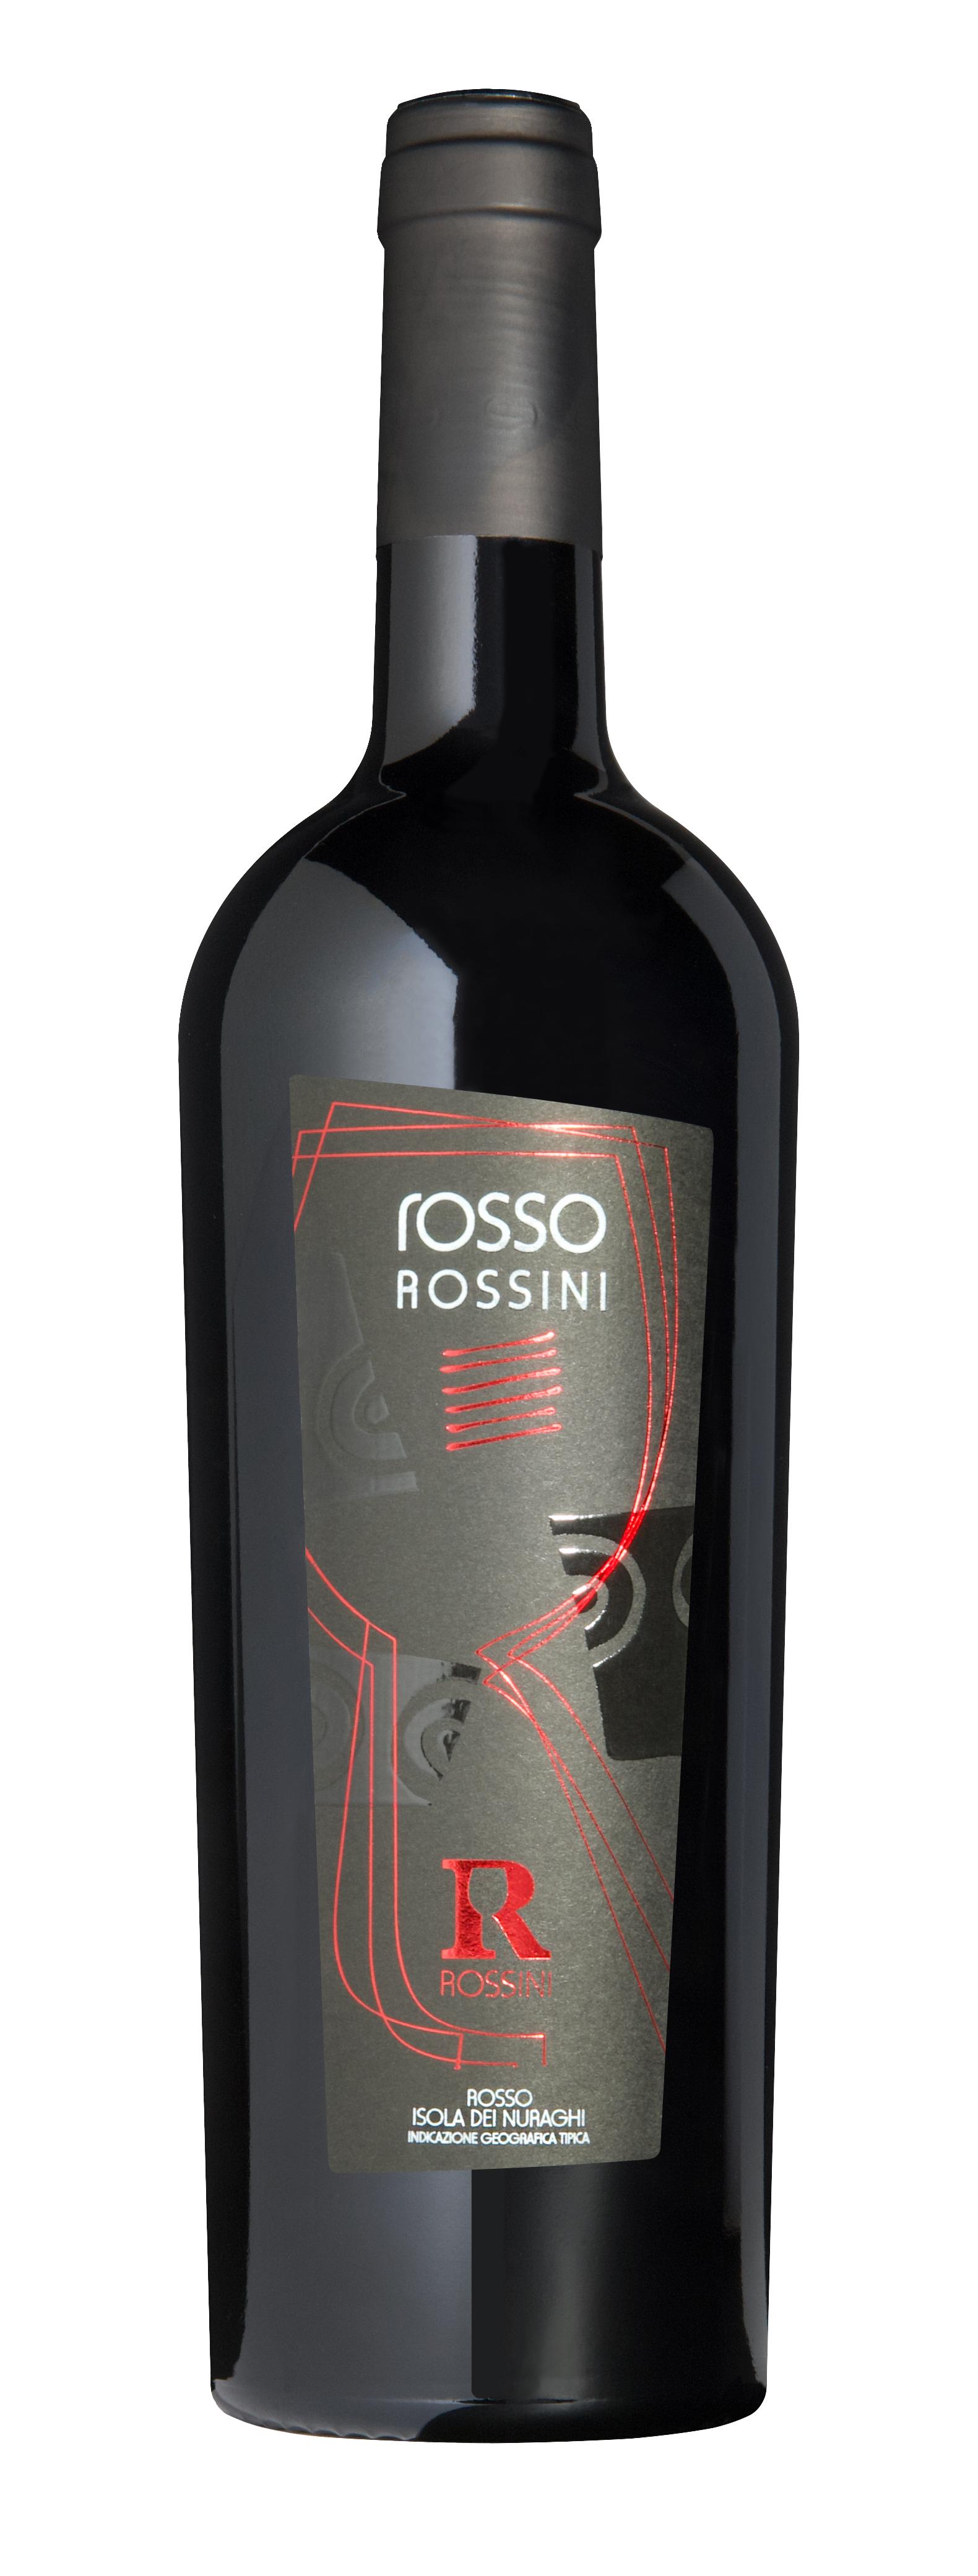 Rosso Rossini isola dei Nuraghi igt 750 ml Tenute Rossini